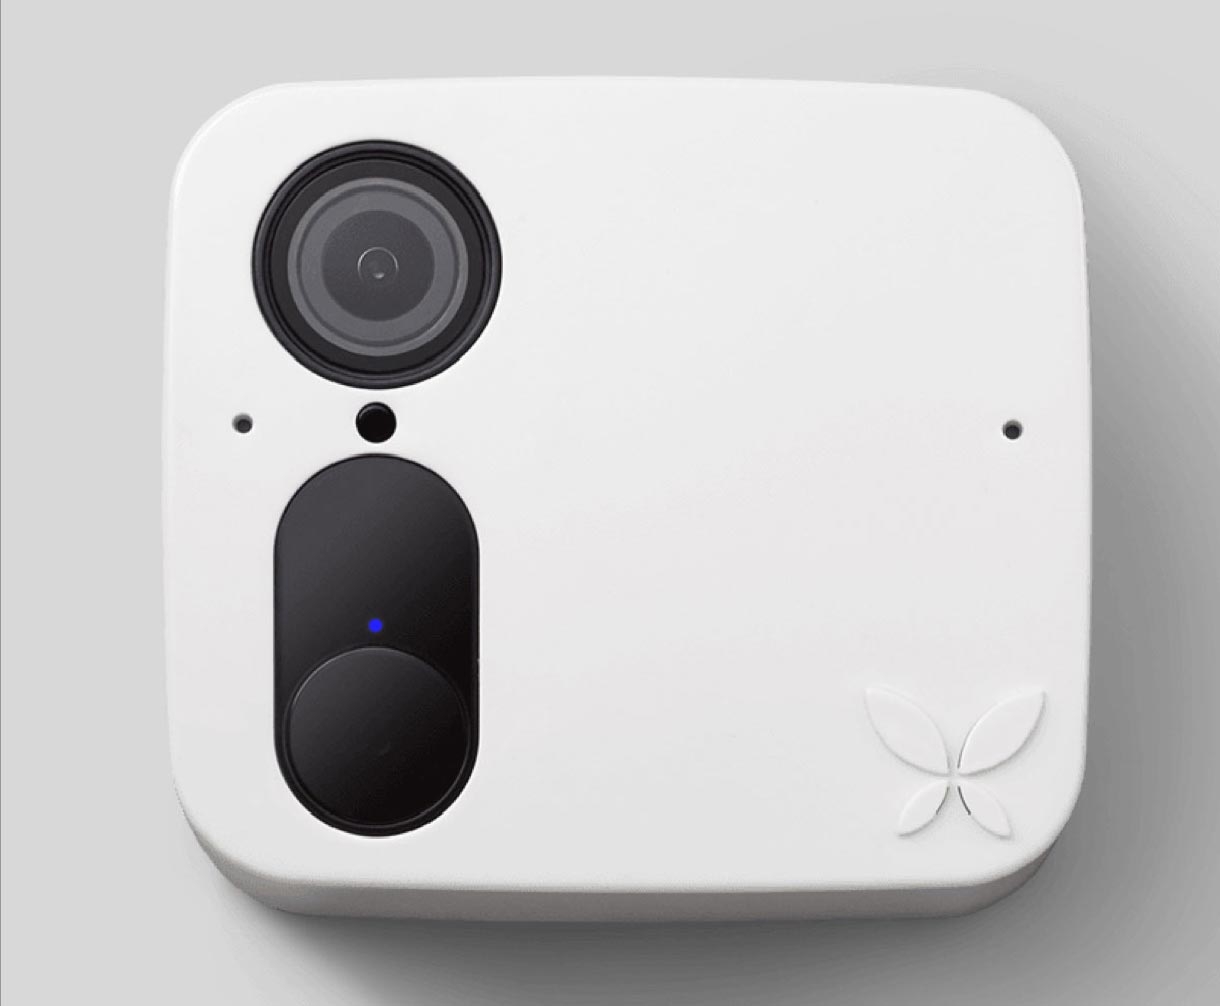 Ooma smartcam in white.